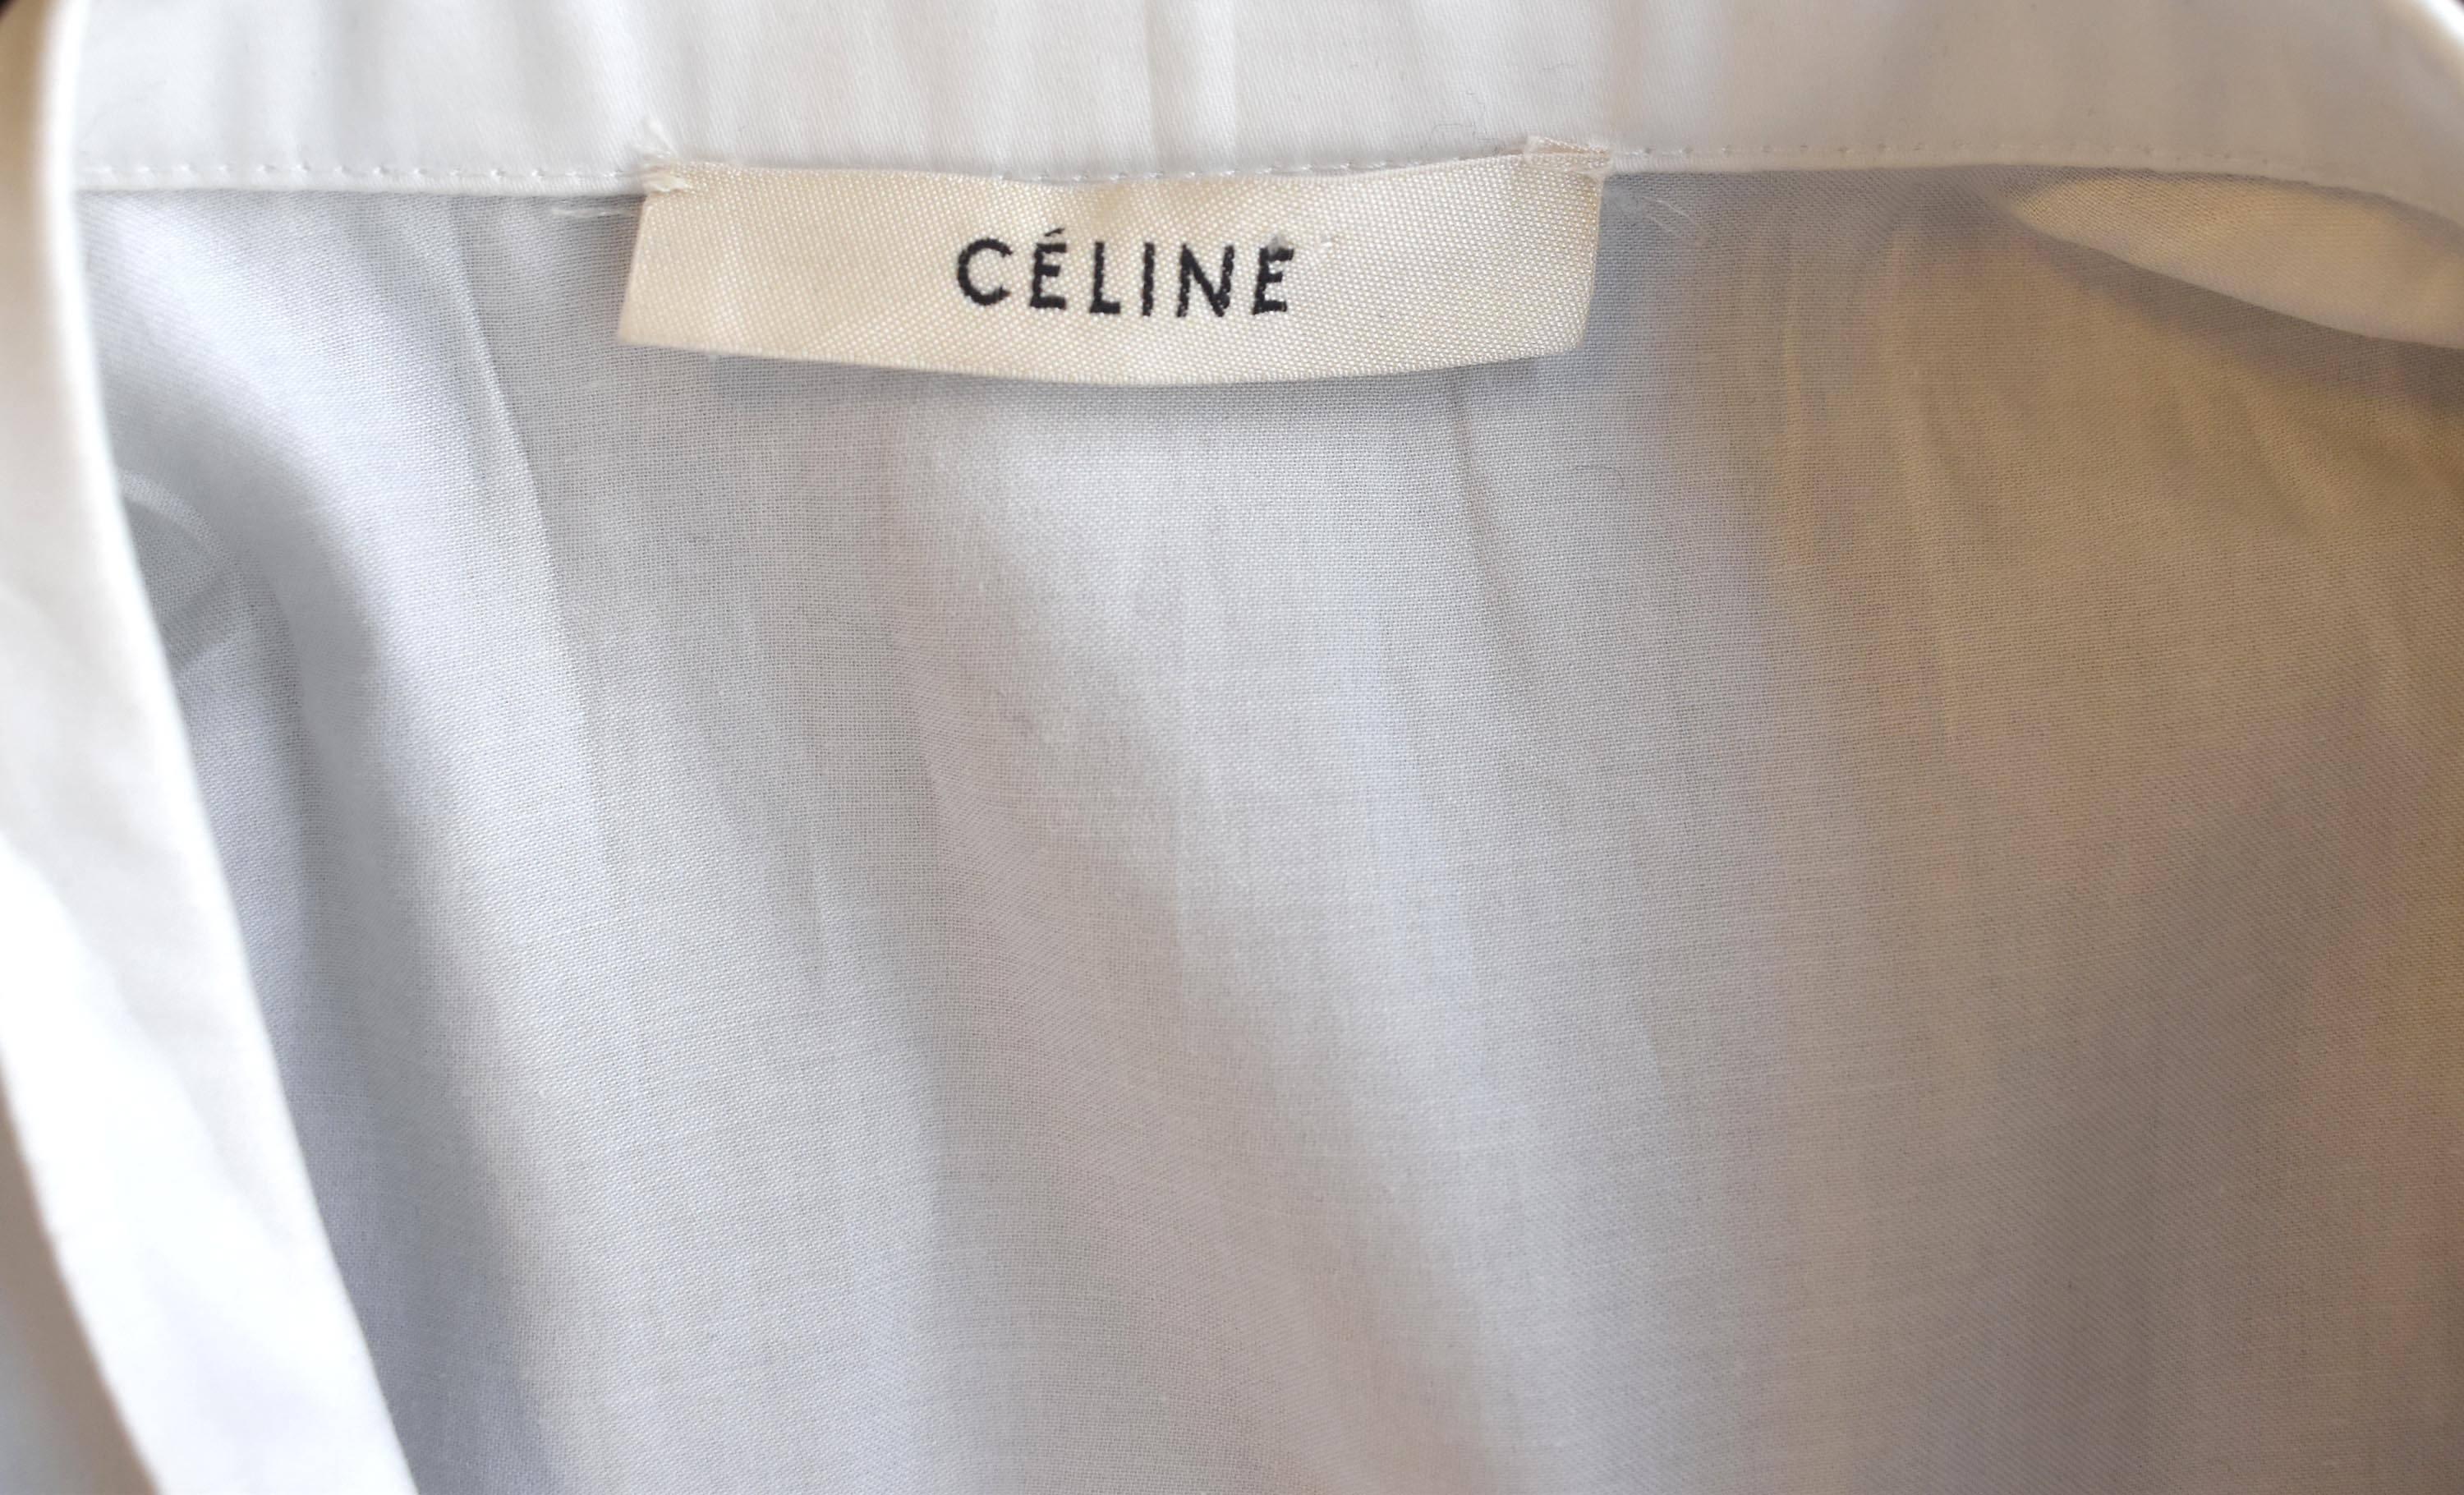 Celine Black Sleeveless Long Tuxedo Coat with Attached White Shirt 2